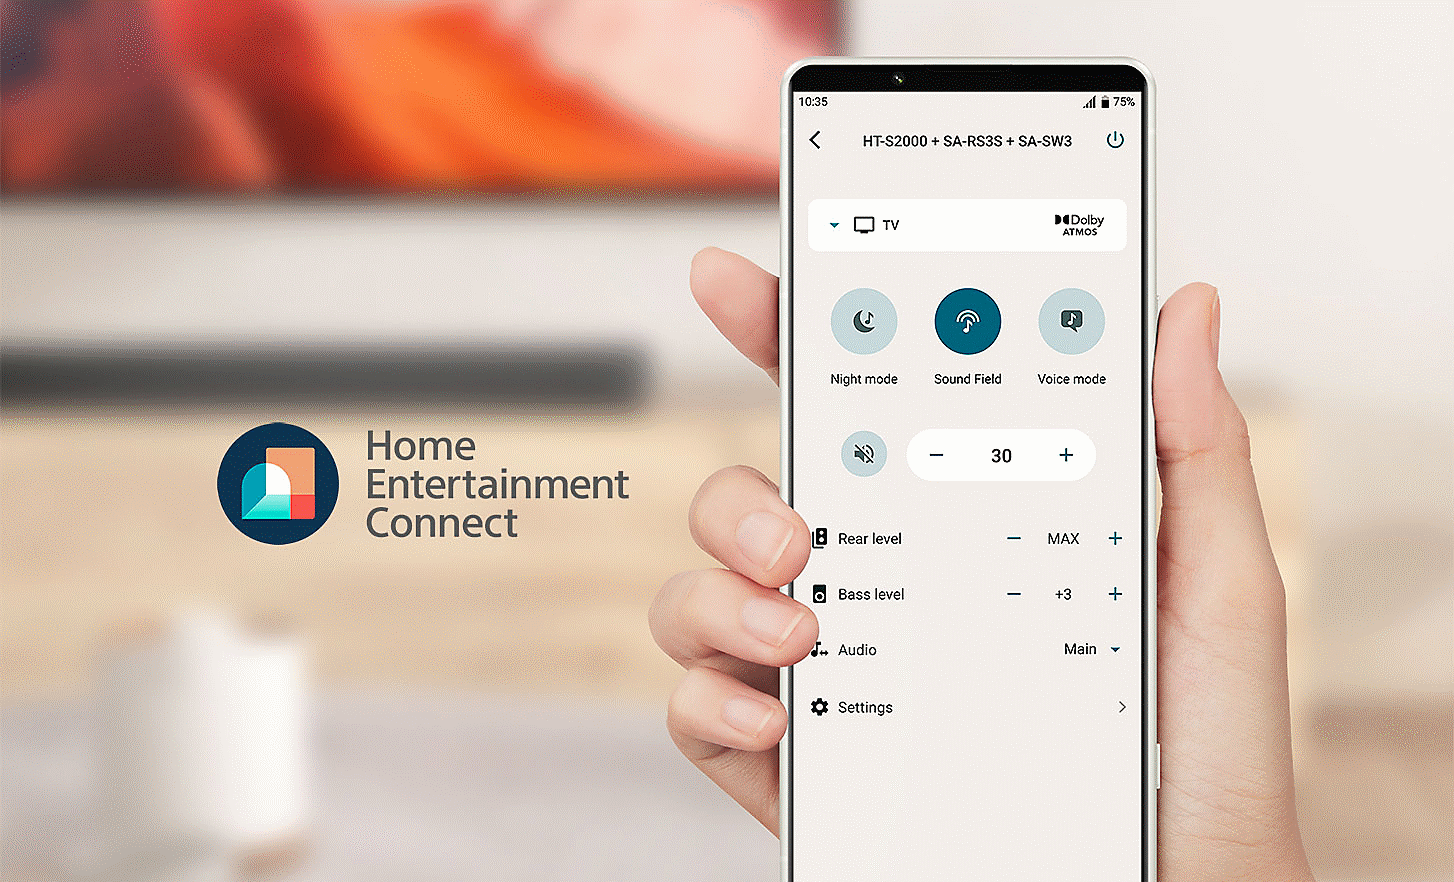 Image d'une main tenant un téléphone portable qui affiche un menu de réglages. Un logo Home Entertainment Connect se trouve à gauche.